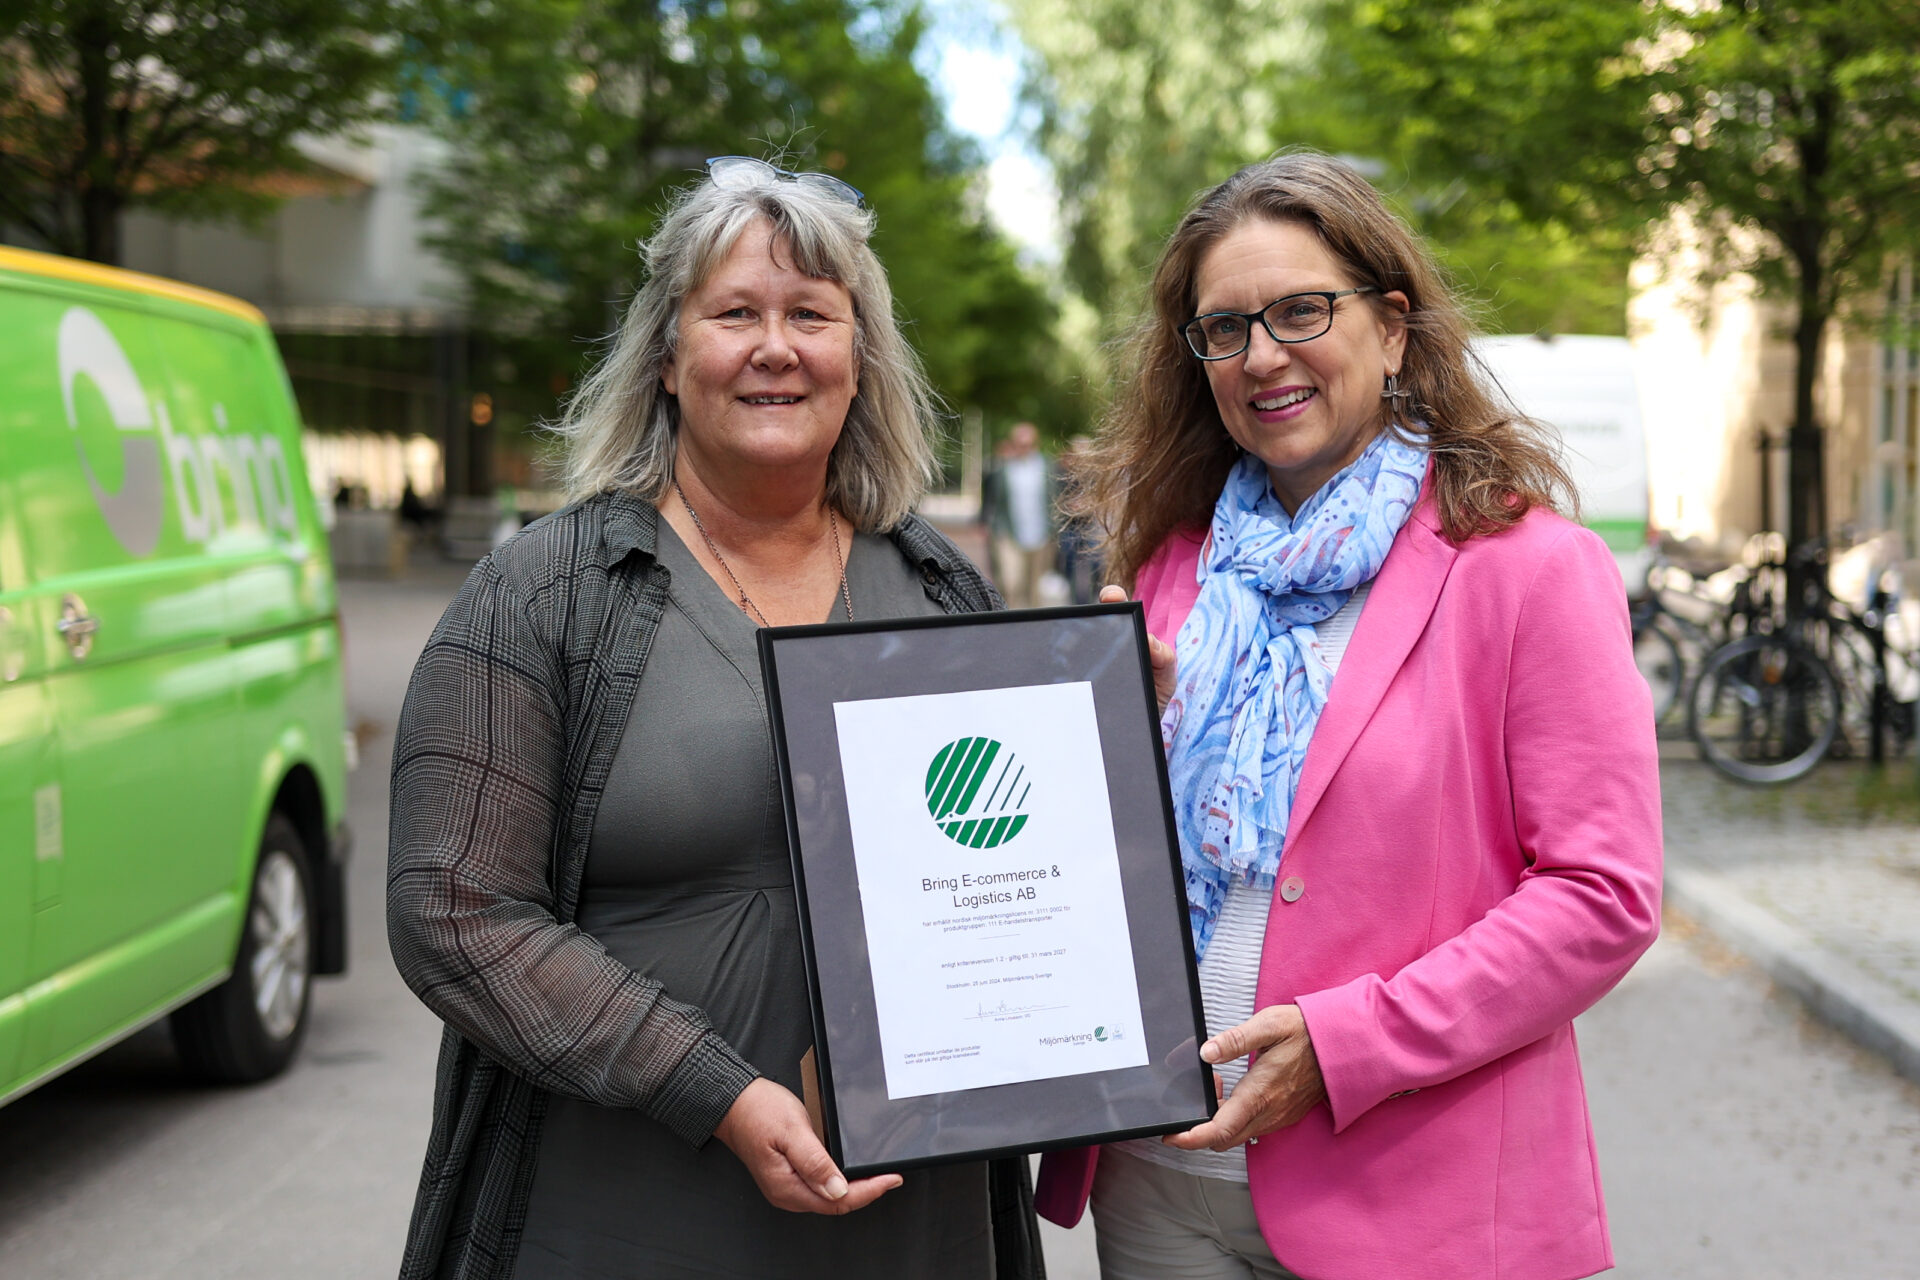    Till vänster Catherine Löfquist, hållbarhetschef Bring Sverige, och Anna Linusson, vd Miljömärkning Sverige, är stolta över att det nu finns ett alternativ för mer hållbara transporter.